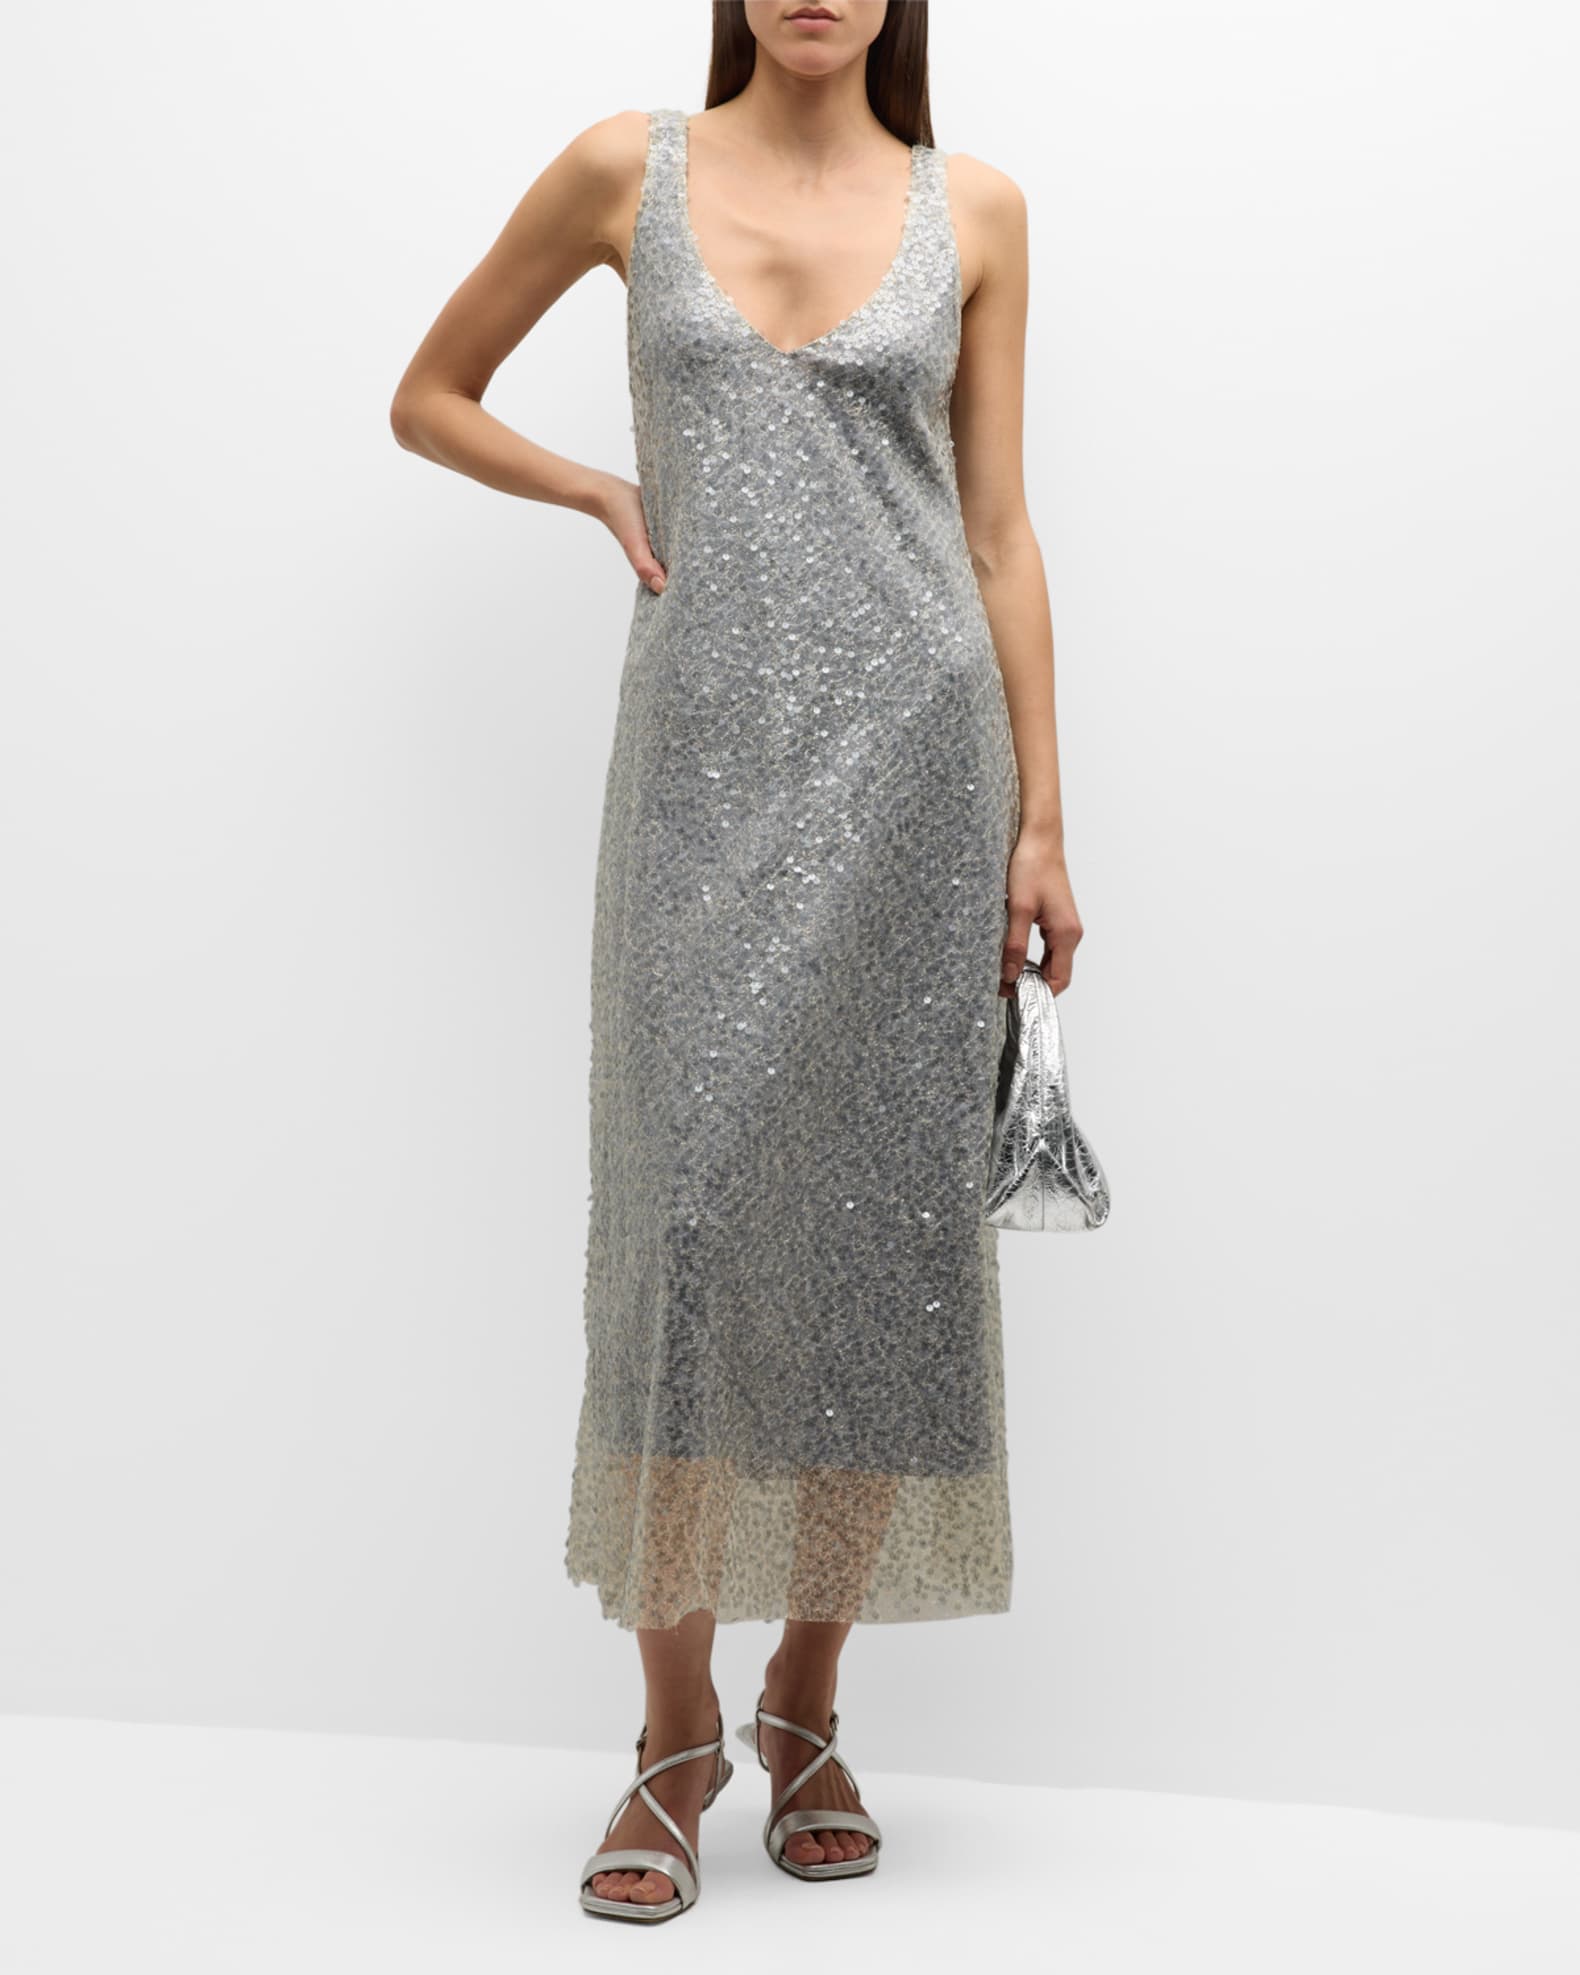 Lucite Metallic Sequin Slip Dress in Dresses & Skirts